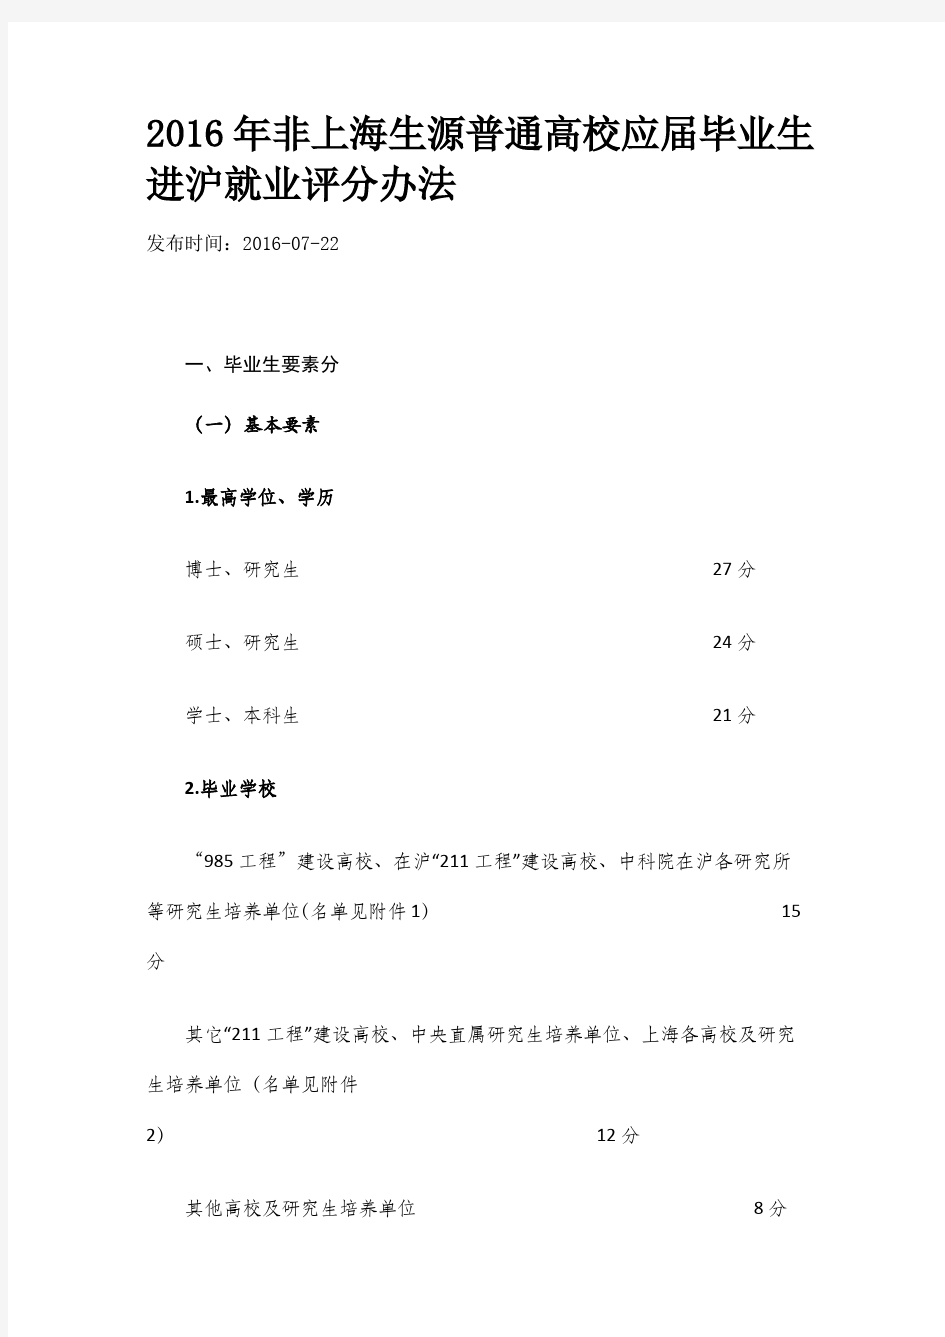 上海落户评分细则